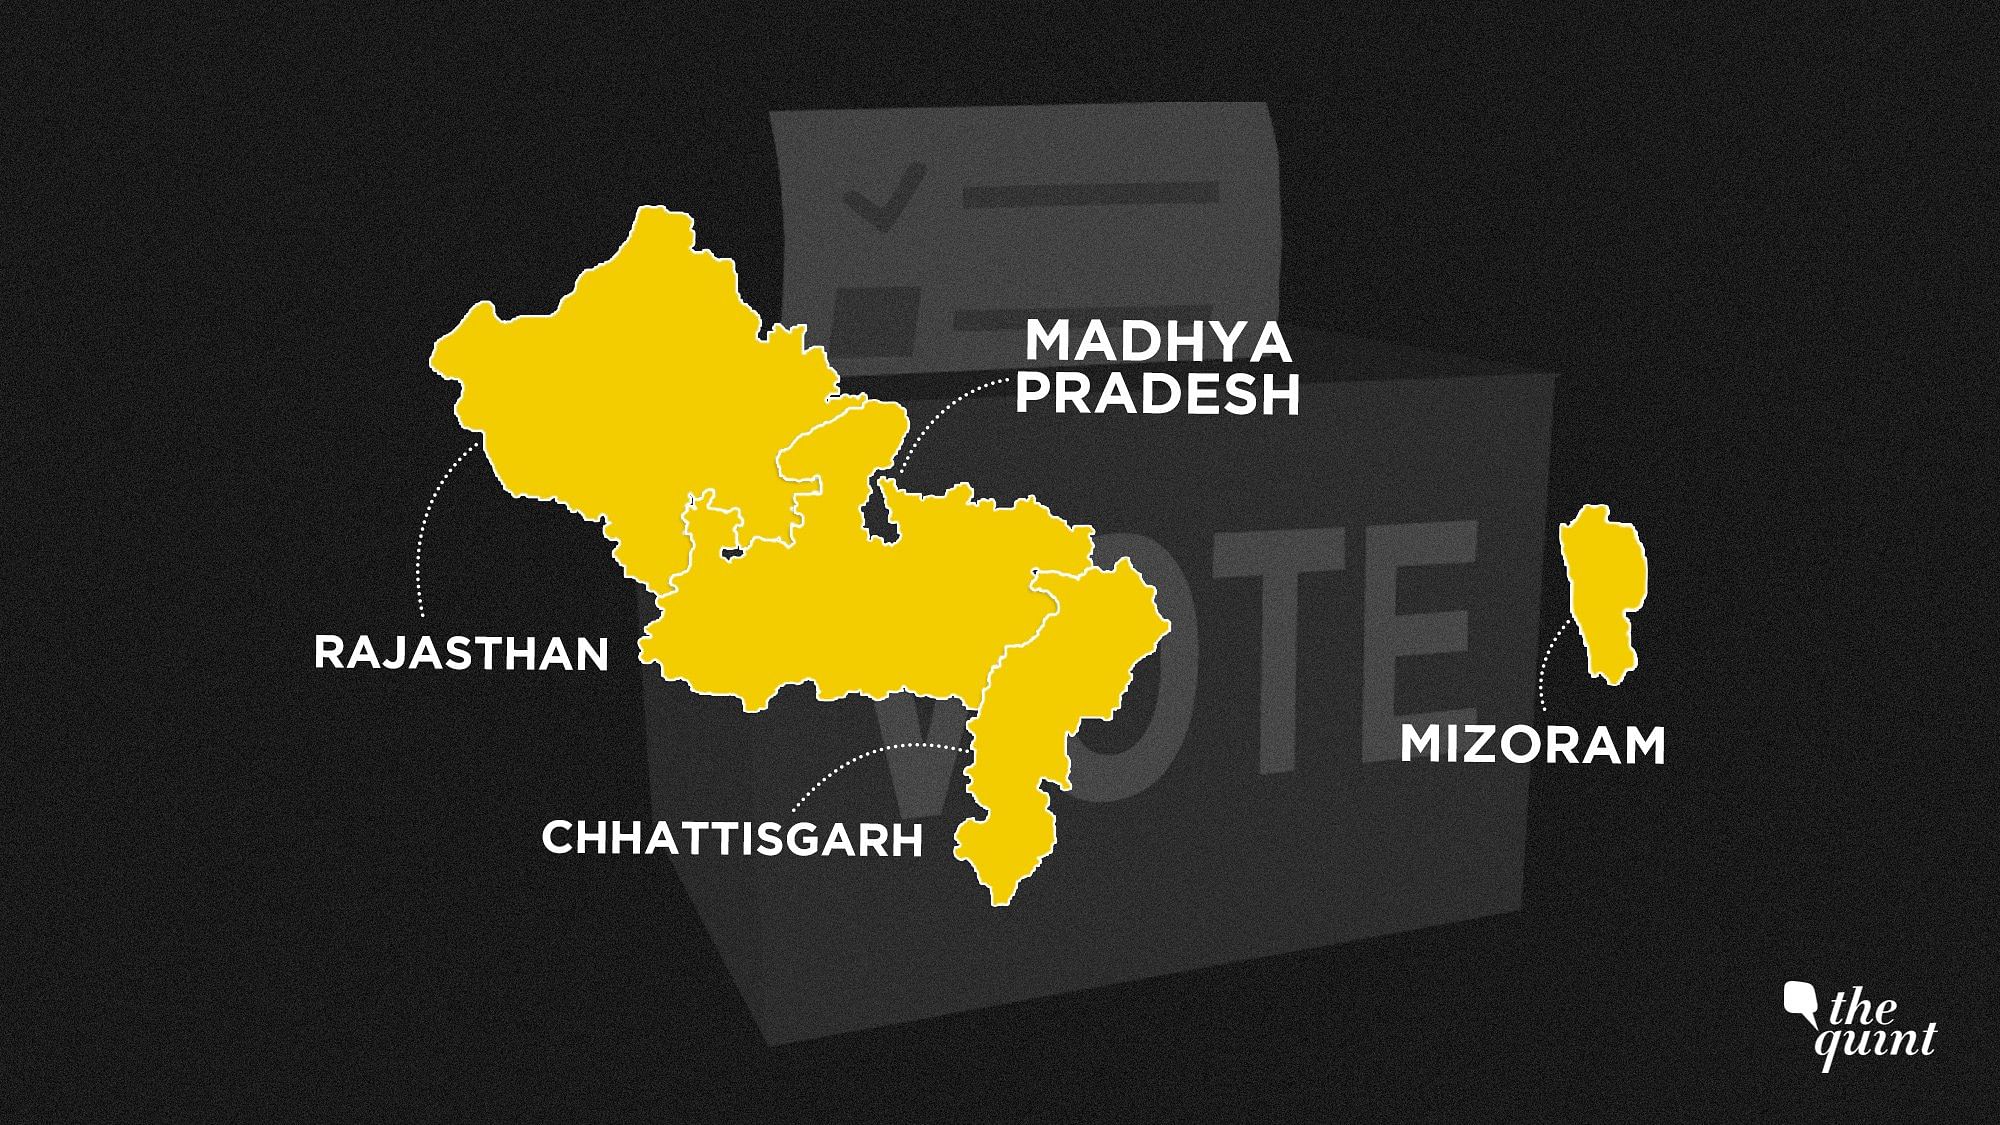  राजस्थान, मध्यप्रदेश, छत्तीसगढ़, मिजोरम और तेलंगाना में होने हैं चुनाव